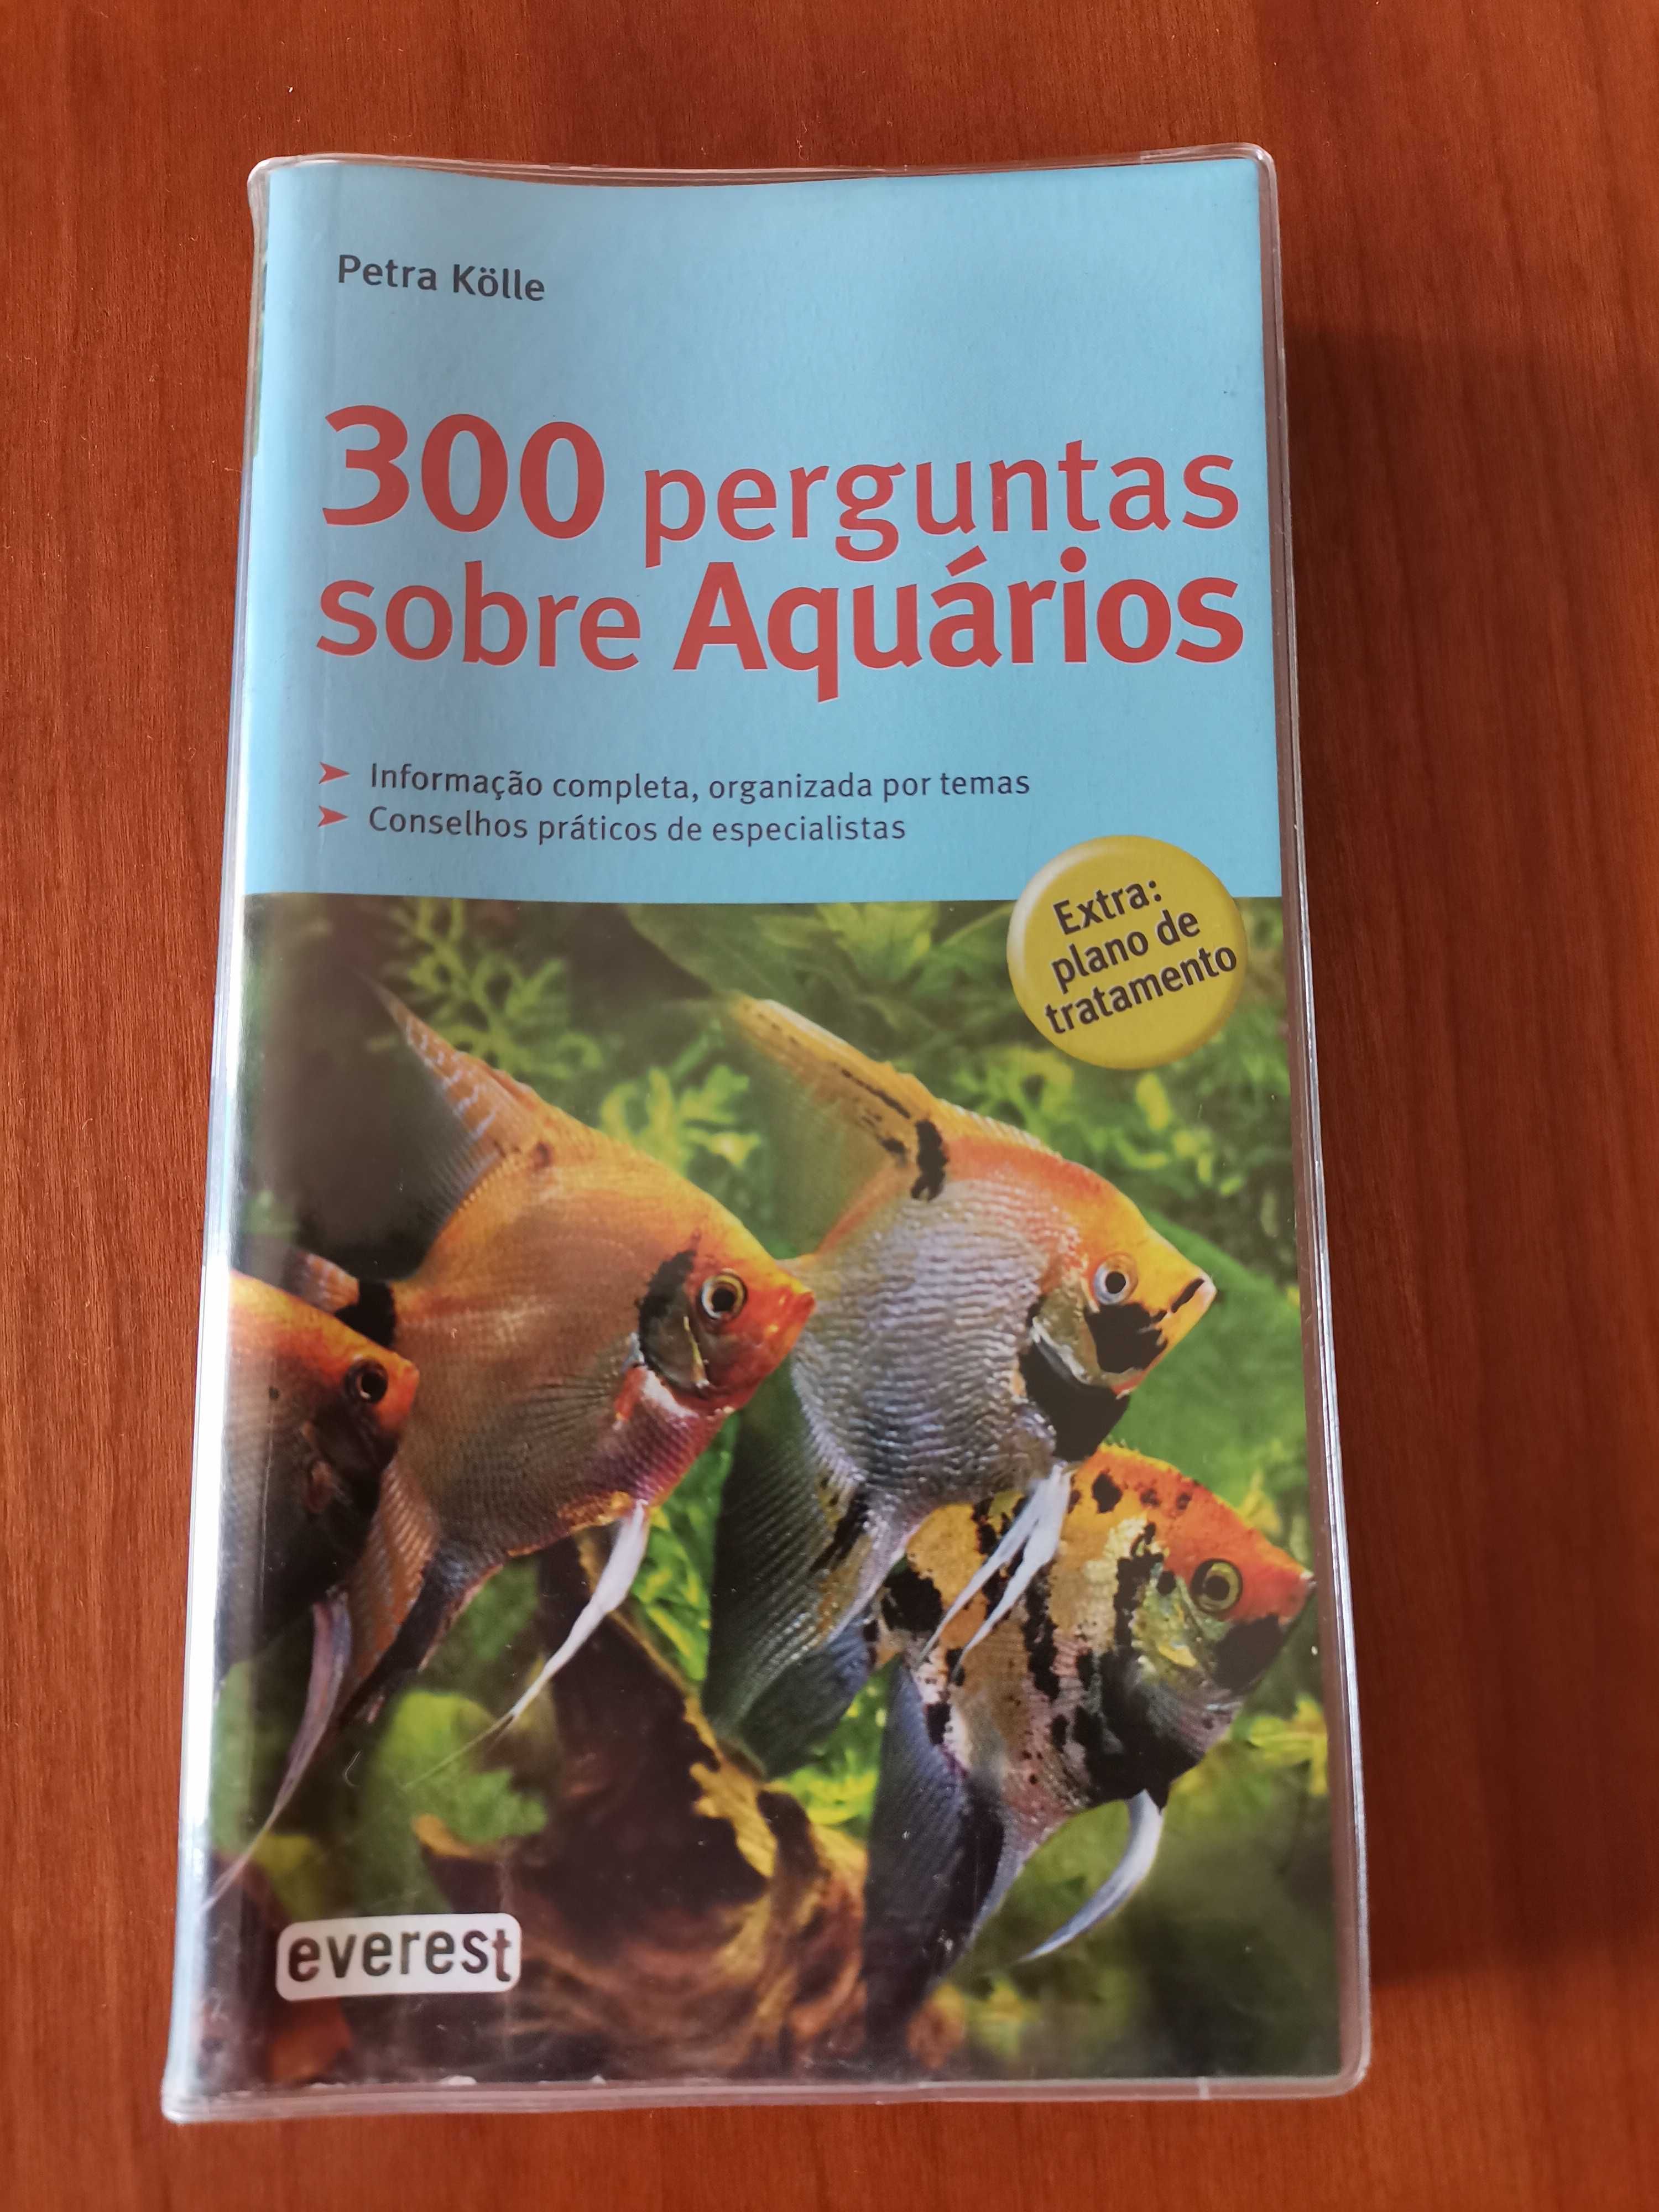 Livro "300 perguntas sobre Aquários"